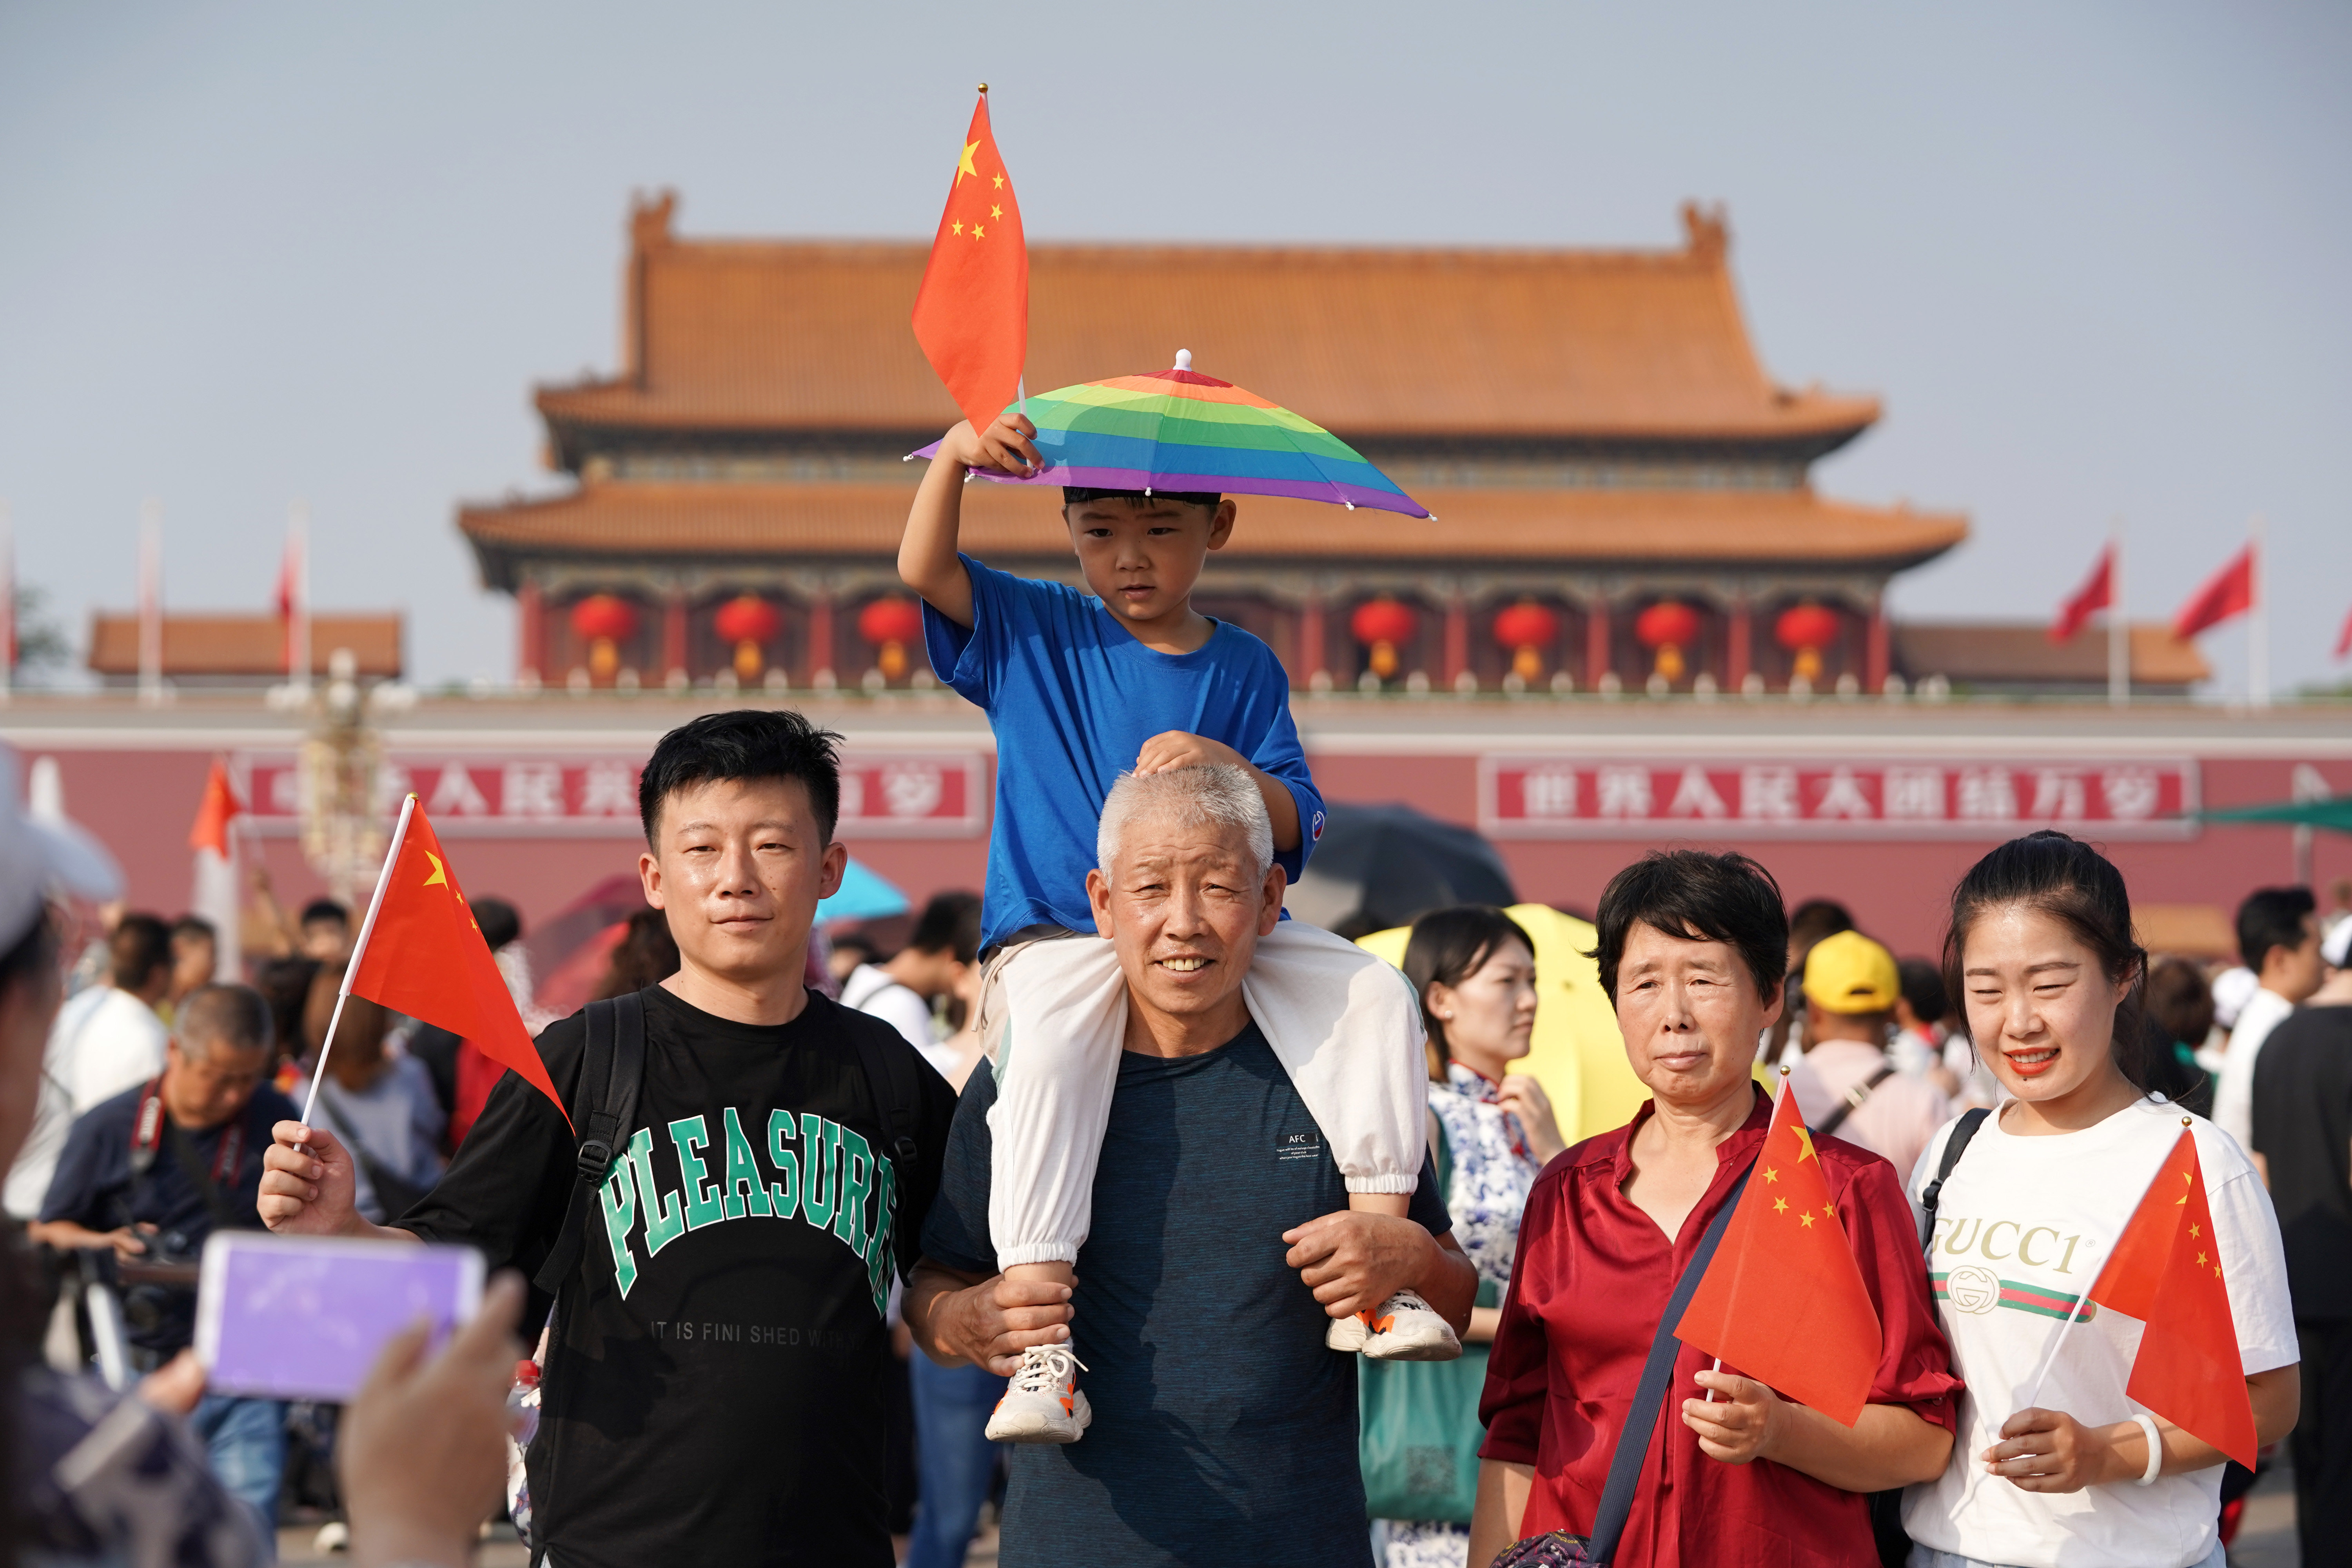 北京:天安门广场游人如织